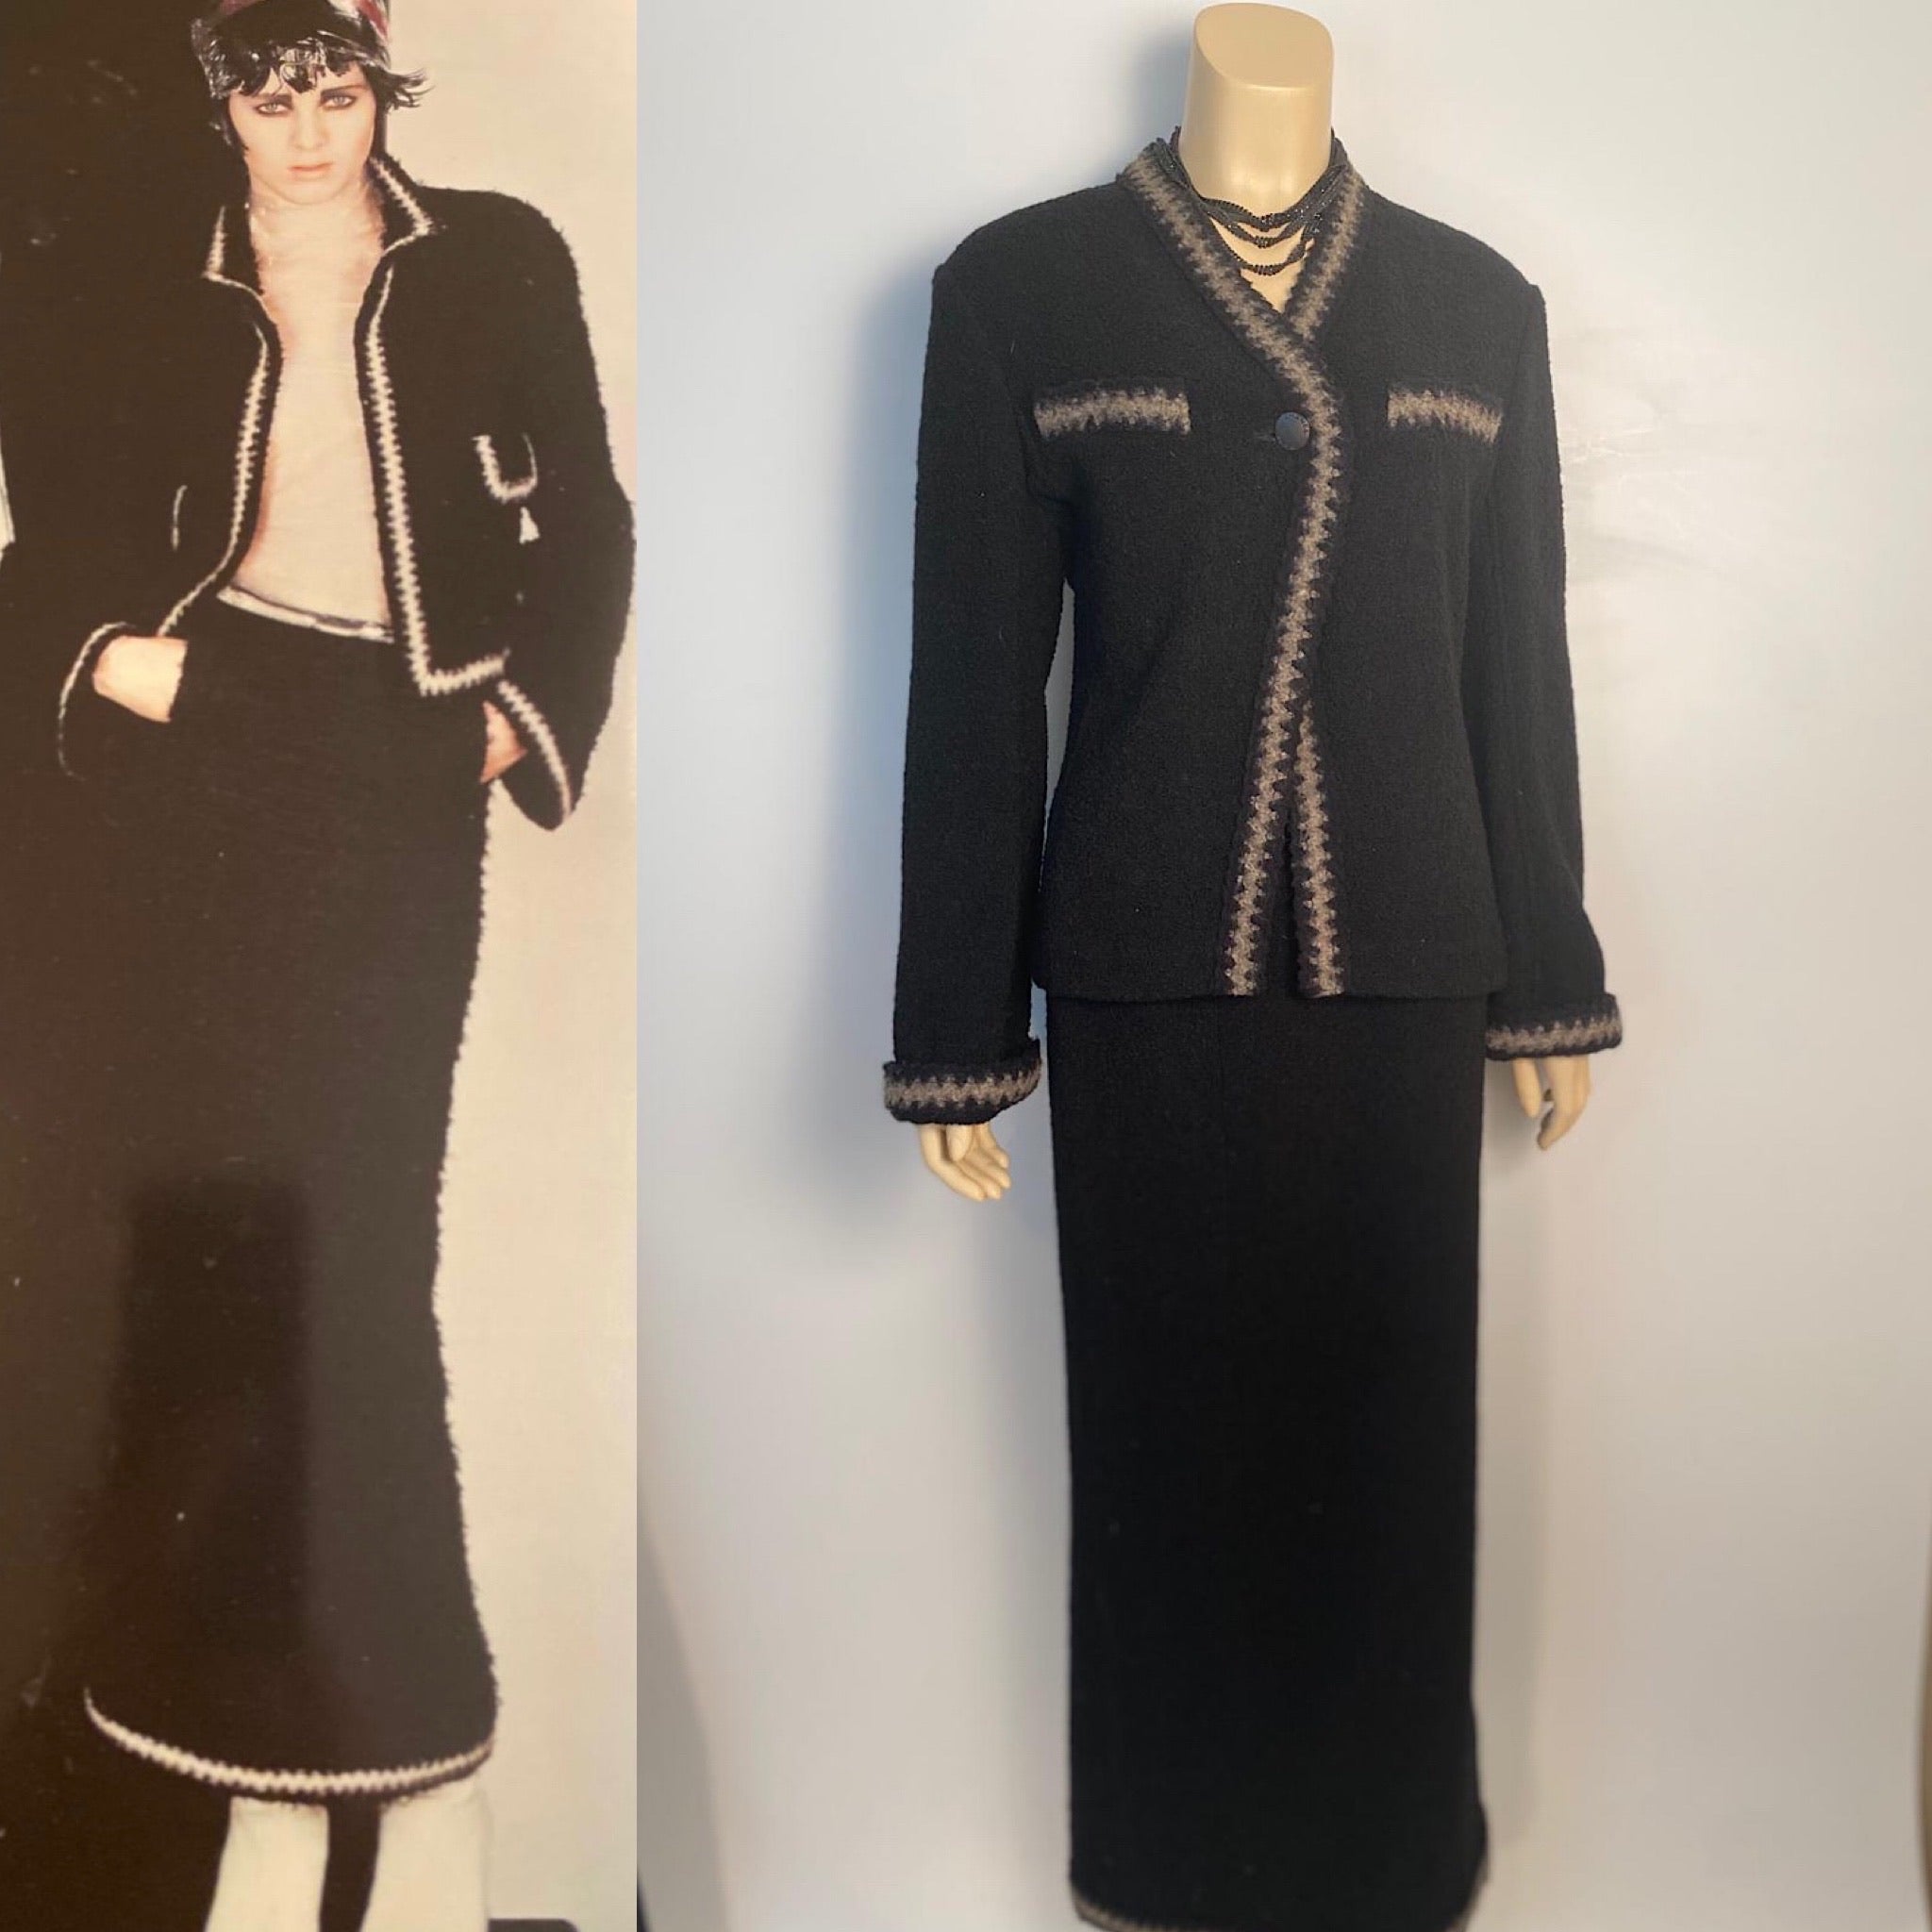 Chanel Black Suit